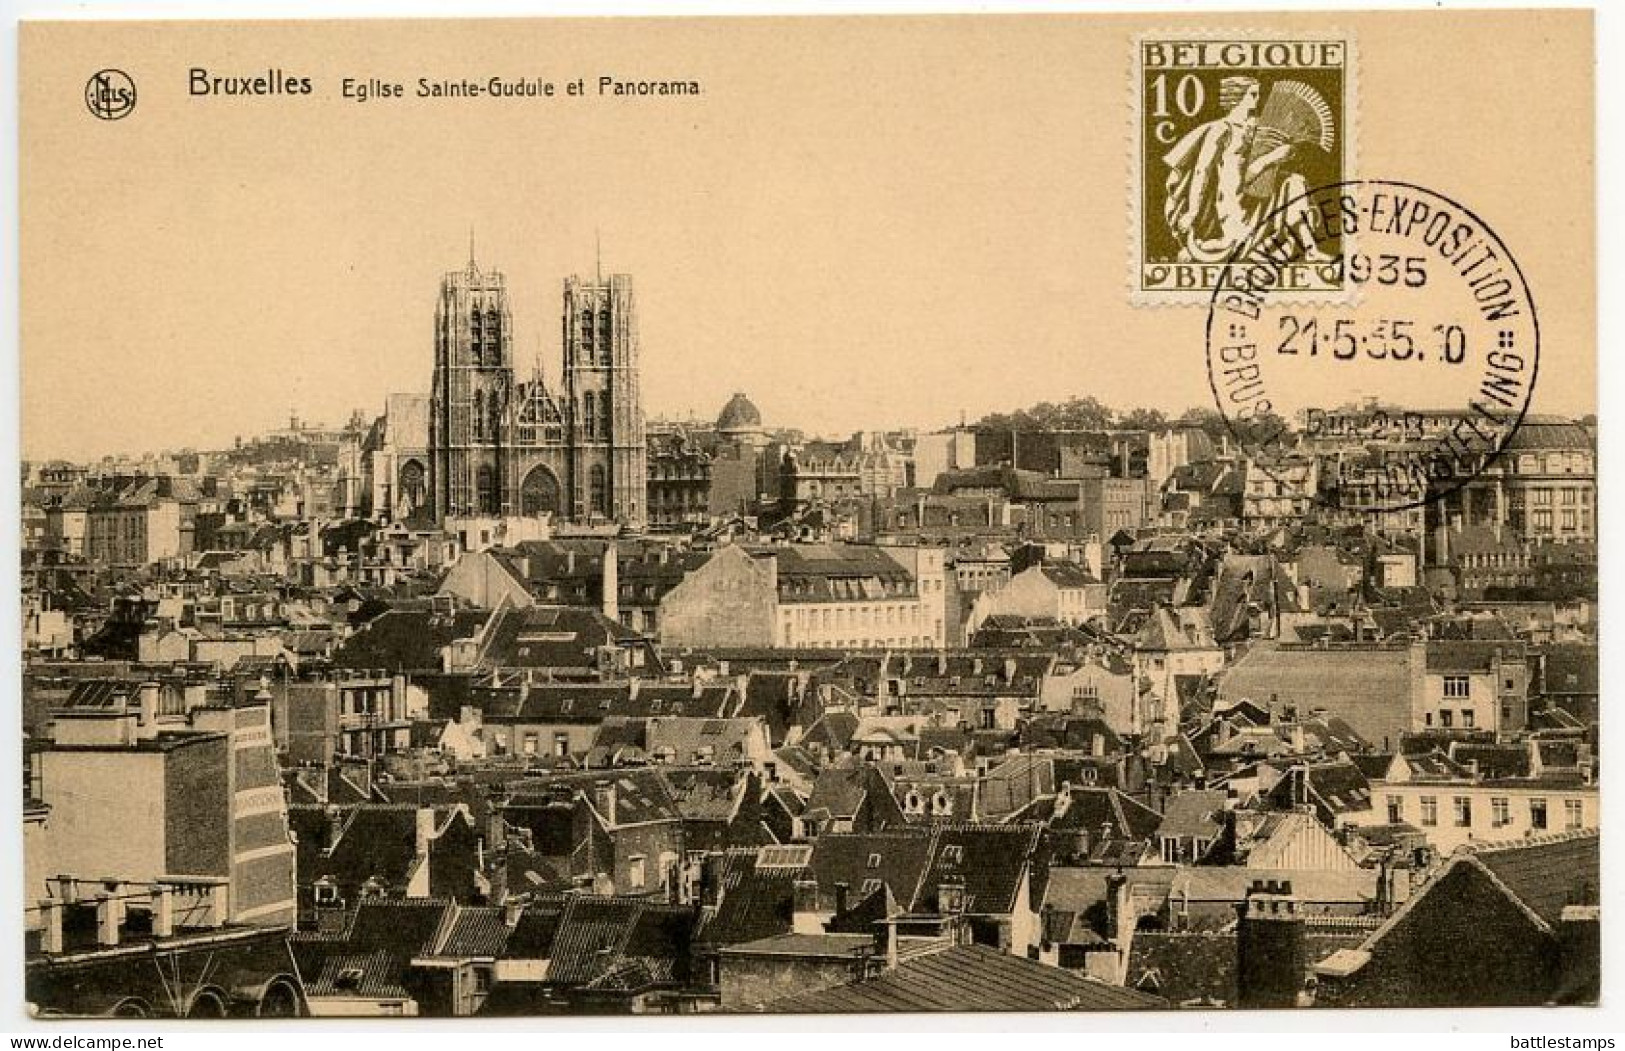 Belgium 1935 Postcard Bruxelles / Brussel, Eglise Sainte-Gudule Et Panorama; Exposition / Tentoonstelling Postmark - Panoramische Zichten, Meerdere Zichten